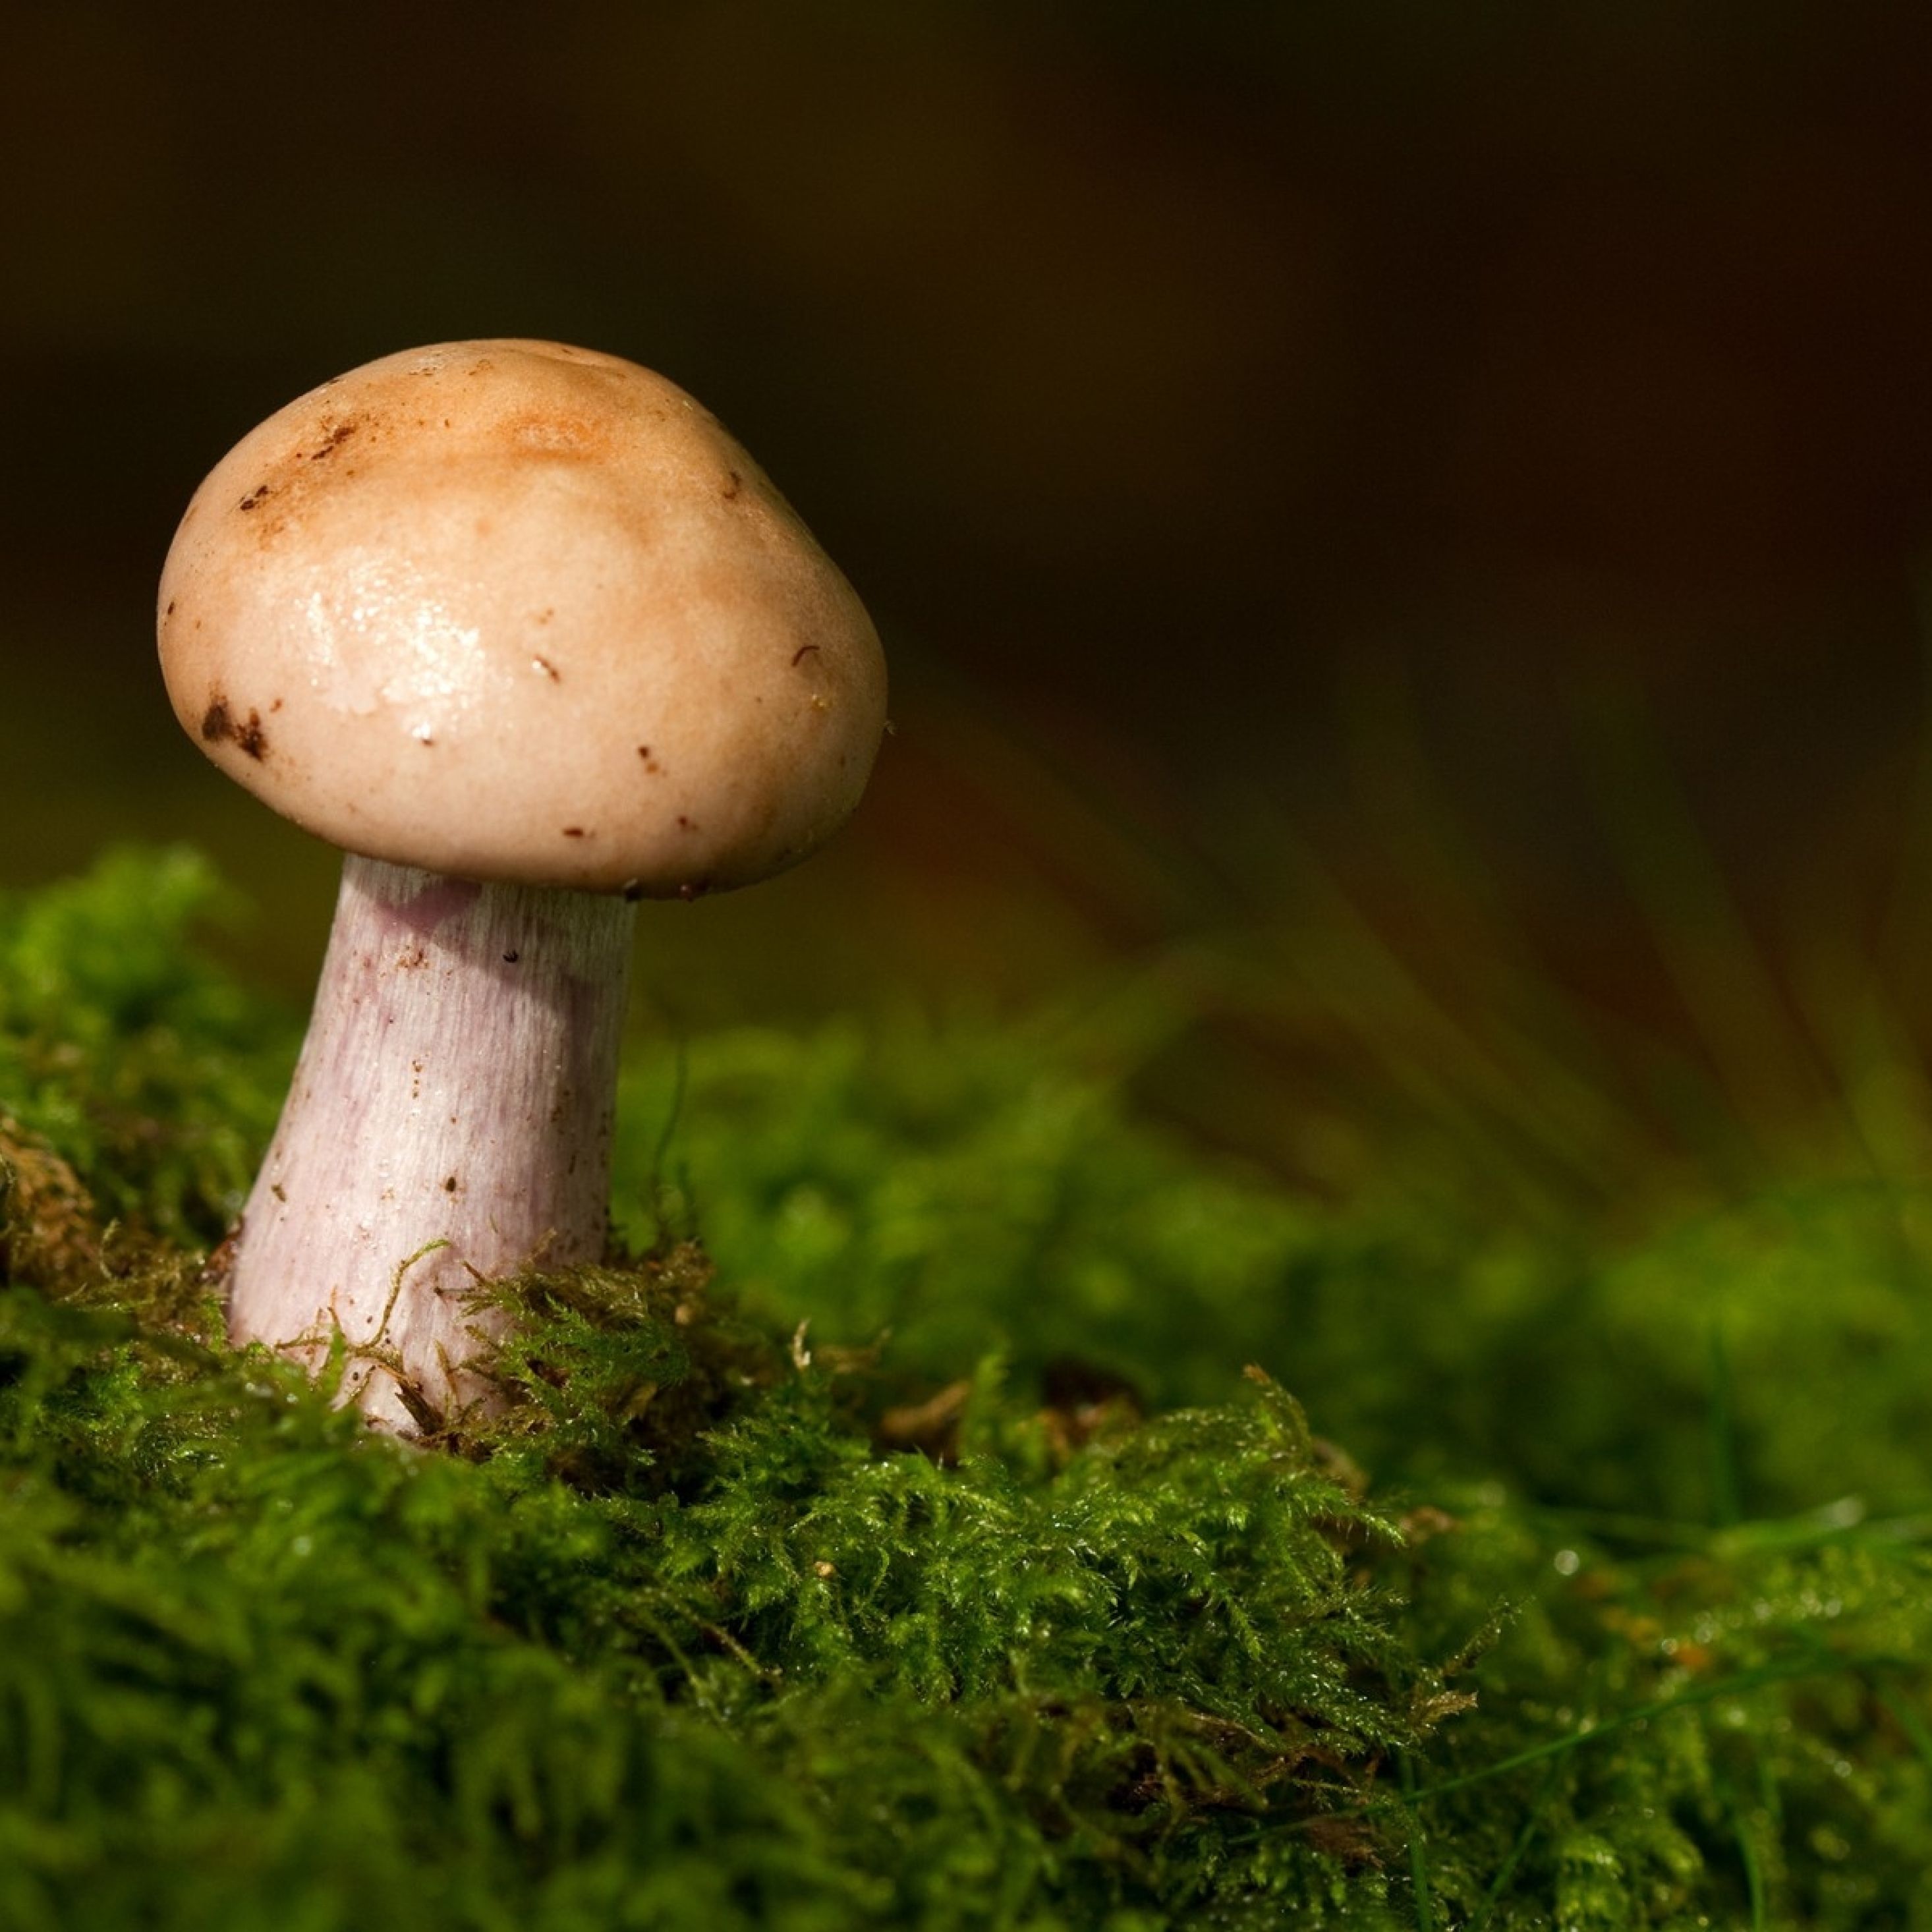 mushroom, grass, moss iPad Pro Retina Display Wallpaper